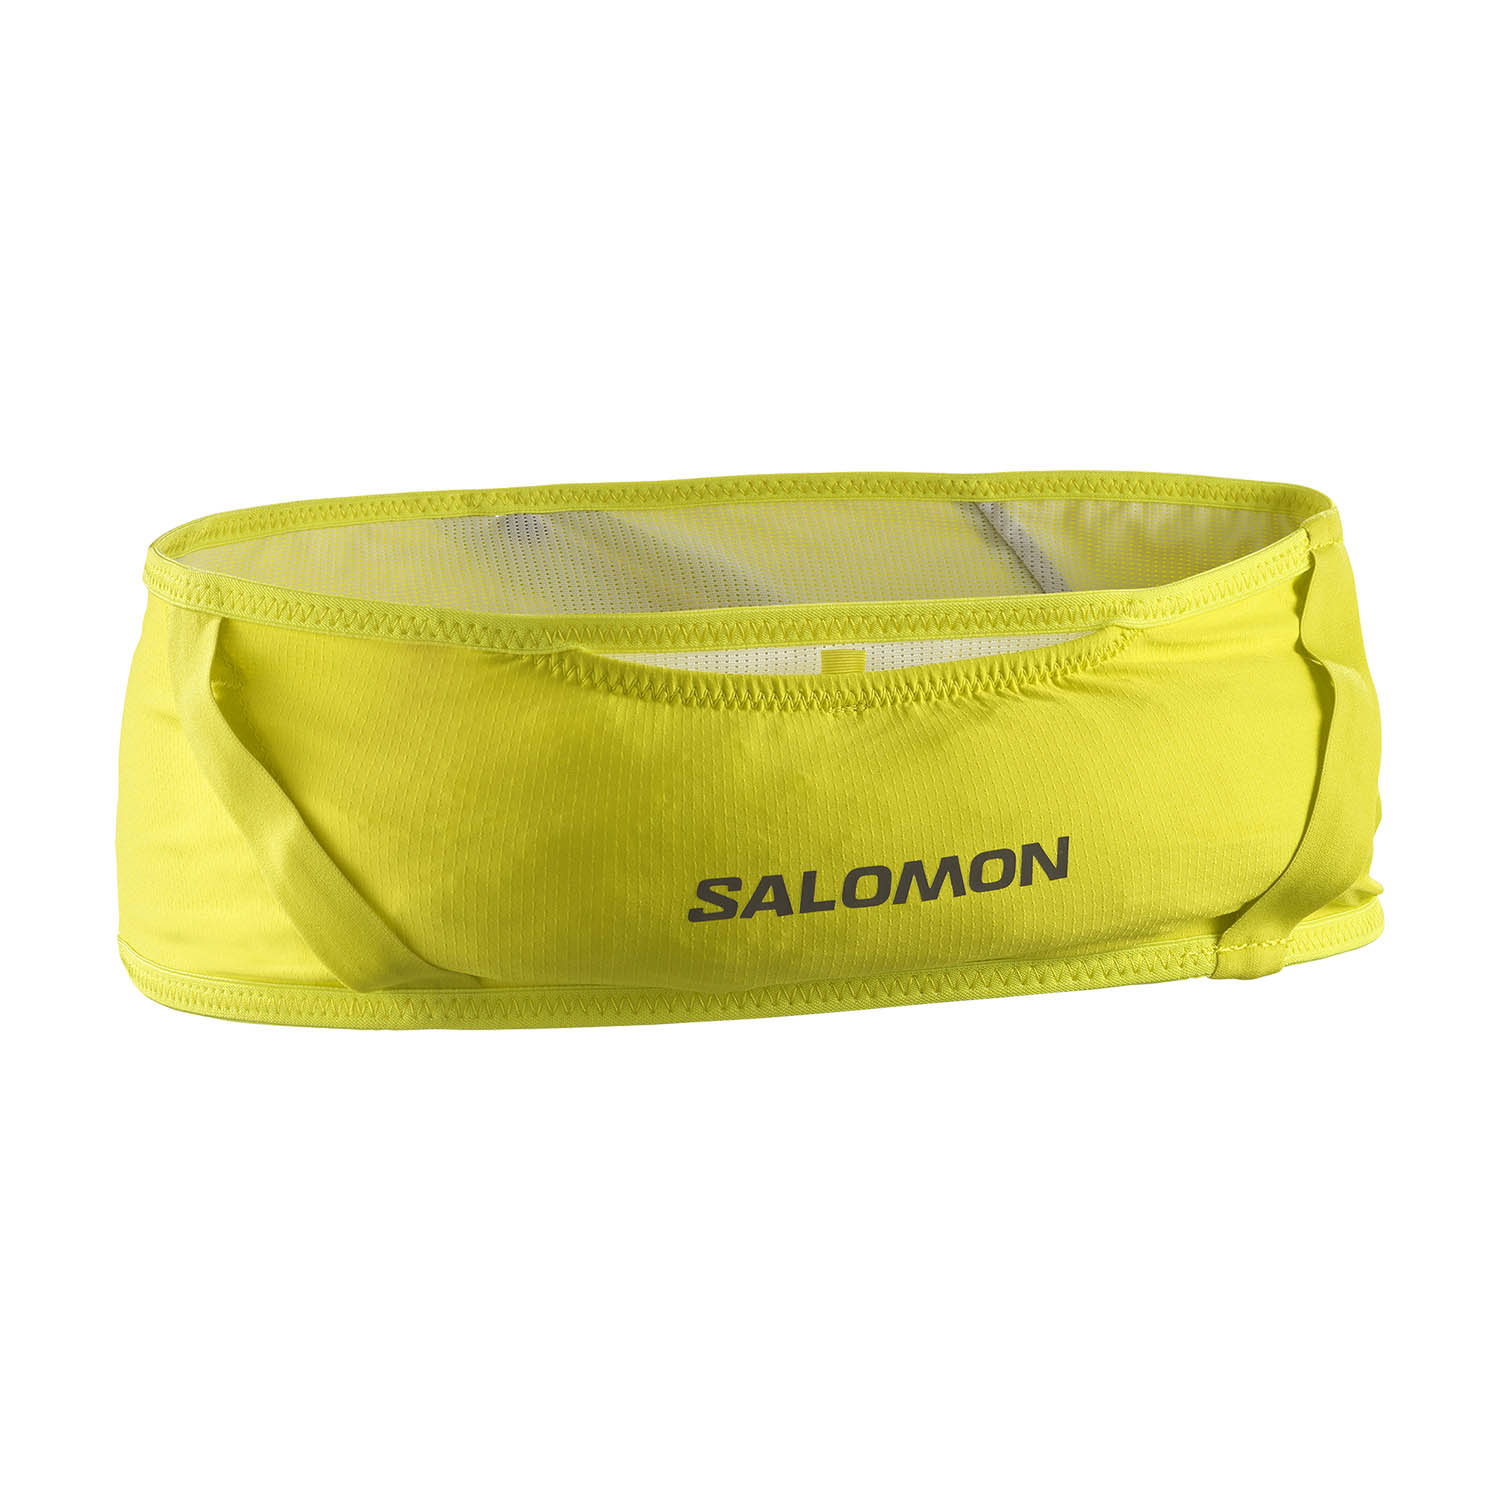 Salomon Pulse Cinturón - Sulphur Spring/Glacier Gray